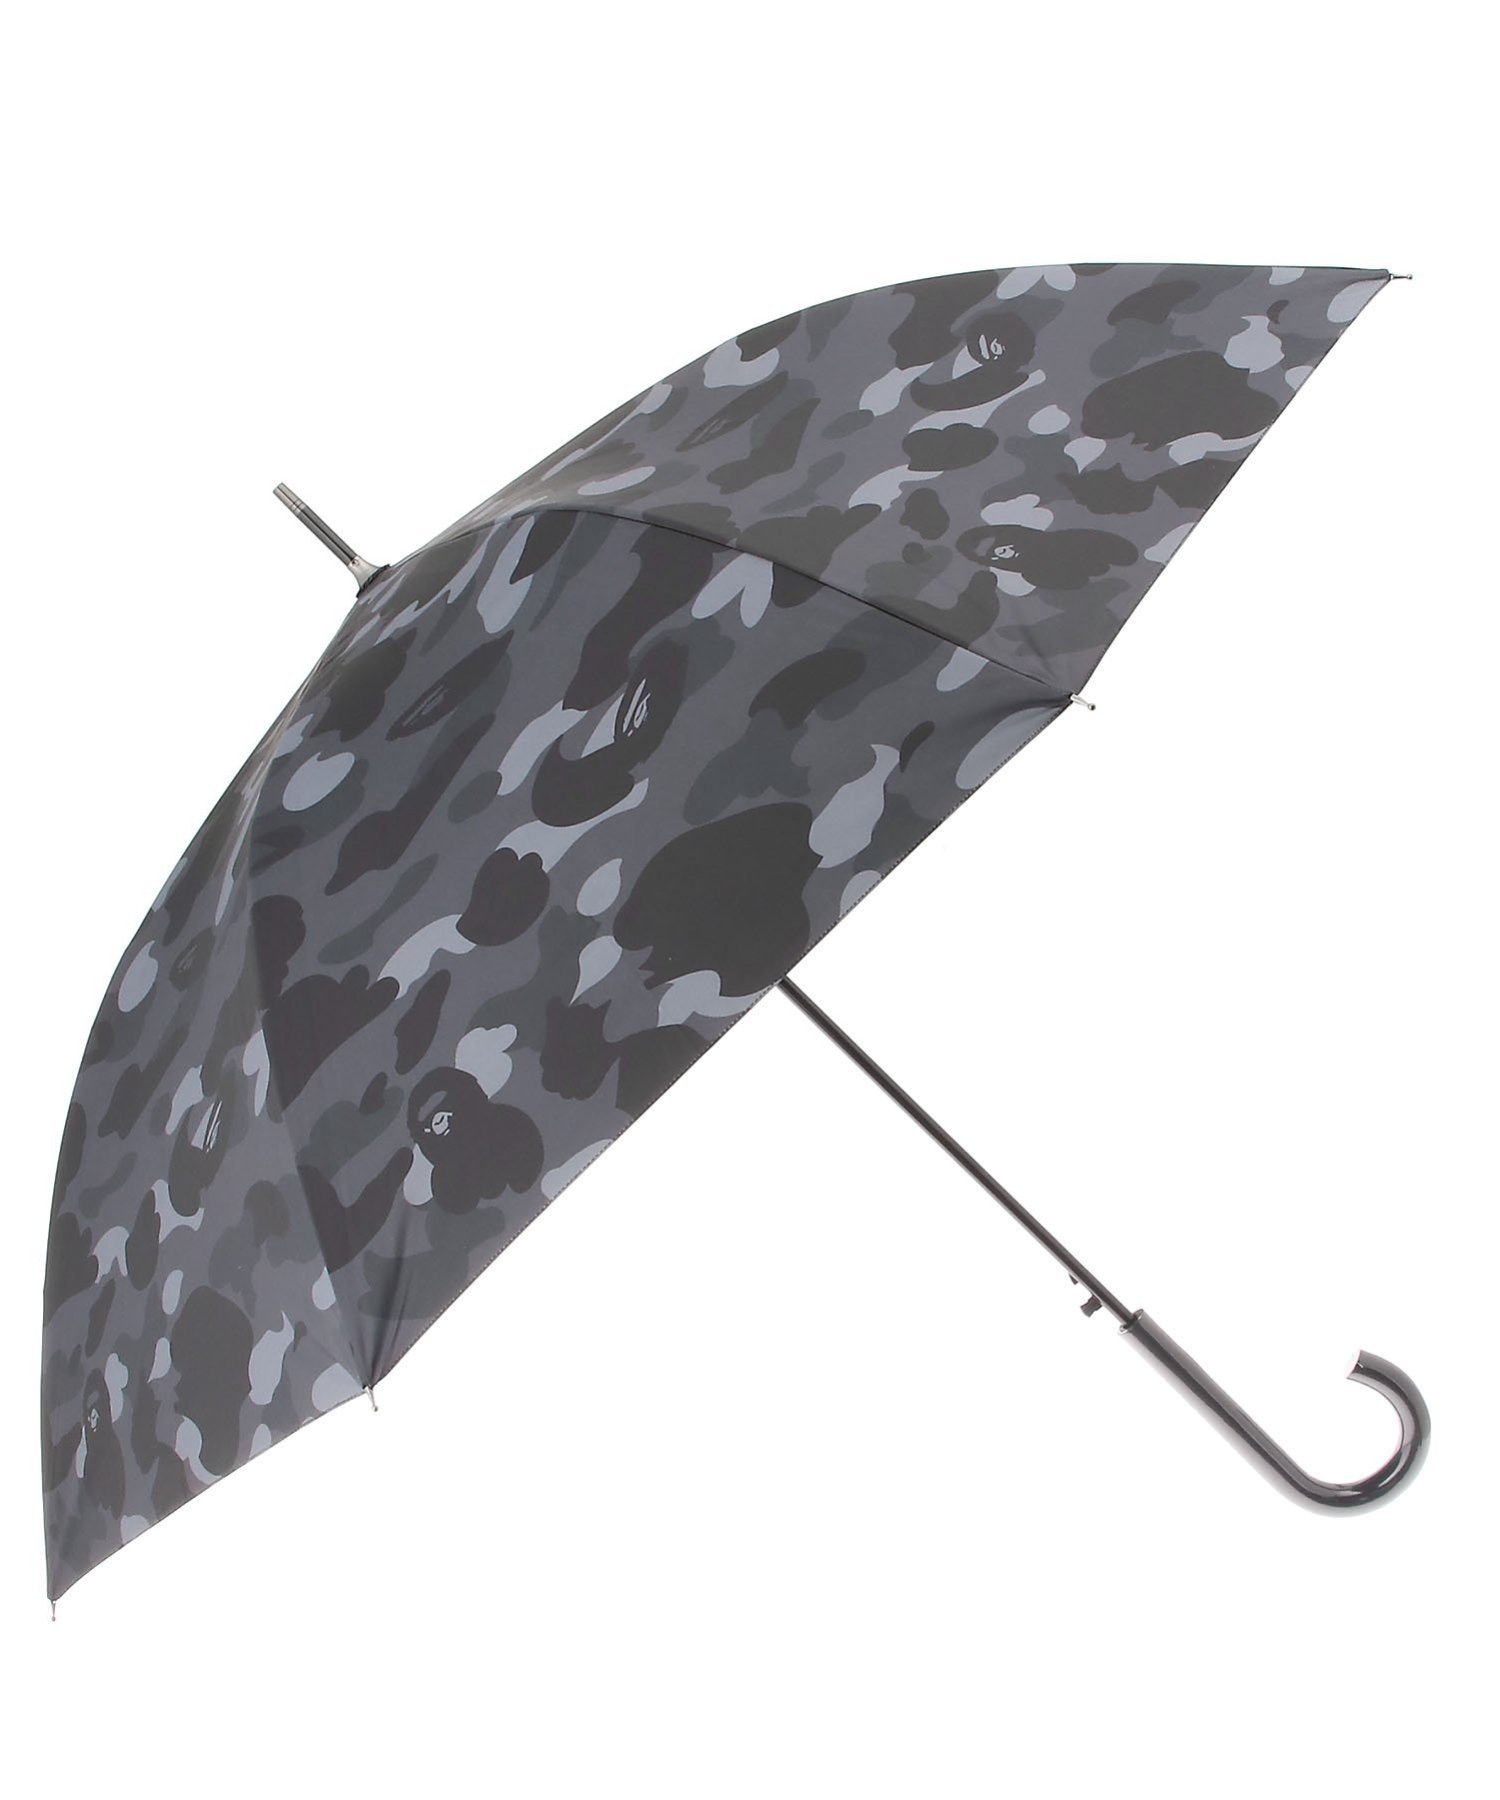 A BATHING APE（ア ベイシング エイプ）COLOR CAMO UMBRELLACOLOR CAMO配色にアレンジした撥水性のあるポリエステル素材、傘骨にグラスファイバー素材を使用した雨傘。ハンドルにA BATHING APE®︎ロゴをレーザー加工で印字。COLOR CAMO配色の傘袋が付属。型番：1K30182015-BLK-00F KV9089【採寸】サイズ長さ親骨F87.5cm60.0cm商品のサイズについて【商品詳細】中国素材：傘地:ポリエステル100%傘骨:グラスファイバー(GFRP,ガラス繊維強化プラスチック)手元:木中棒:鉄石突:亜鉛合金サイズ：F※画面上と実物では多少色具合が異なって見える場合もございます。ご了承ください。商品のカラーについて 【予約商品について】 ※「先行予約販売中」「予約販売中」をご注文の際は予約商品についてをご確認ください。A BATHING APE（ア ベイシング エイプ）COLOR CAMO UMBRELLACOLOR CAMO配色にアレンジした撥水性のあるポリエステル素材、傘骨にグラスファイバー素材を使用した雨傘。ハンドルにA BATHING APE®︎ロゴをレーザー加工で印字。COLOR CAMO配色の傘袋が付属。型番：1K30182015-BLK-00F KV9089【採寸】サイズ長さ親骨F87.5cm60.0cm商品のサイズについて【商品詳細】中国素材：傘地:ポリエステル100%傘骨:グラスファイバー(GFRP,ガラス繊維強化プラスチック)手元:木中棒:鉄石突:亜鉛合金サイズ：F※画面上と実物では多少色具合が異なって見える場合もございます。ご了承ください。商品のカラーについて 【予約商品について】 ※「先行予約販売中」「予約販売中」をご注文の際は予約商品についてをご確認ください。■重要なお知らせ※ 当店では、ギフト配送サービス及びラッピングサービスを行っておりません。ご注文者様とお届け先が違う場合でも、タグ（値札）付「納品書 兼 返品連絡票」同梱の状態でお送り致しますのでご了承ください。 ラッピング・ギフト配送について※ 2点以上ご購入の場合、全ての商品が揃い次第一括でのお届けとなります。お届け予定日の異なる商品をお買い上げの場合はご注意下さい。お急ぎの商品がございましたら分けてご購入いただきますようお願い致します。発送について ※ 買い物カートに入れるだけでは在庫確保されませんのでお早めに購入手続きをしてください。当店では在庫を複数サイトで共有しているため、同時にご注文があった場合、売切れとなってしまう事がございます。お手数ですが、ご注文後に当店からお送りする「ご注文内容の確認メール」をご確認ください。ご注文の確定について ※ Rakuten Fashionの商品ページに記載しているメーカー希望小売価格は、楽天市場「商品価格ナビ」に登録されている価格に準じています。 商品の価格についてA BATHING APEA BATHING APEの傘・長傘ファッション雑貨ご注文・お届けについて発送ガイドラッピンググッズ3,980円以上送料無料ご利用ガイド